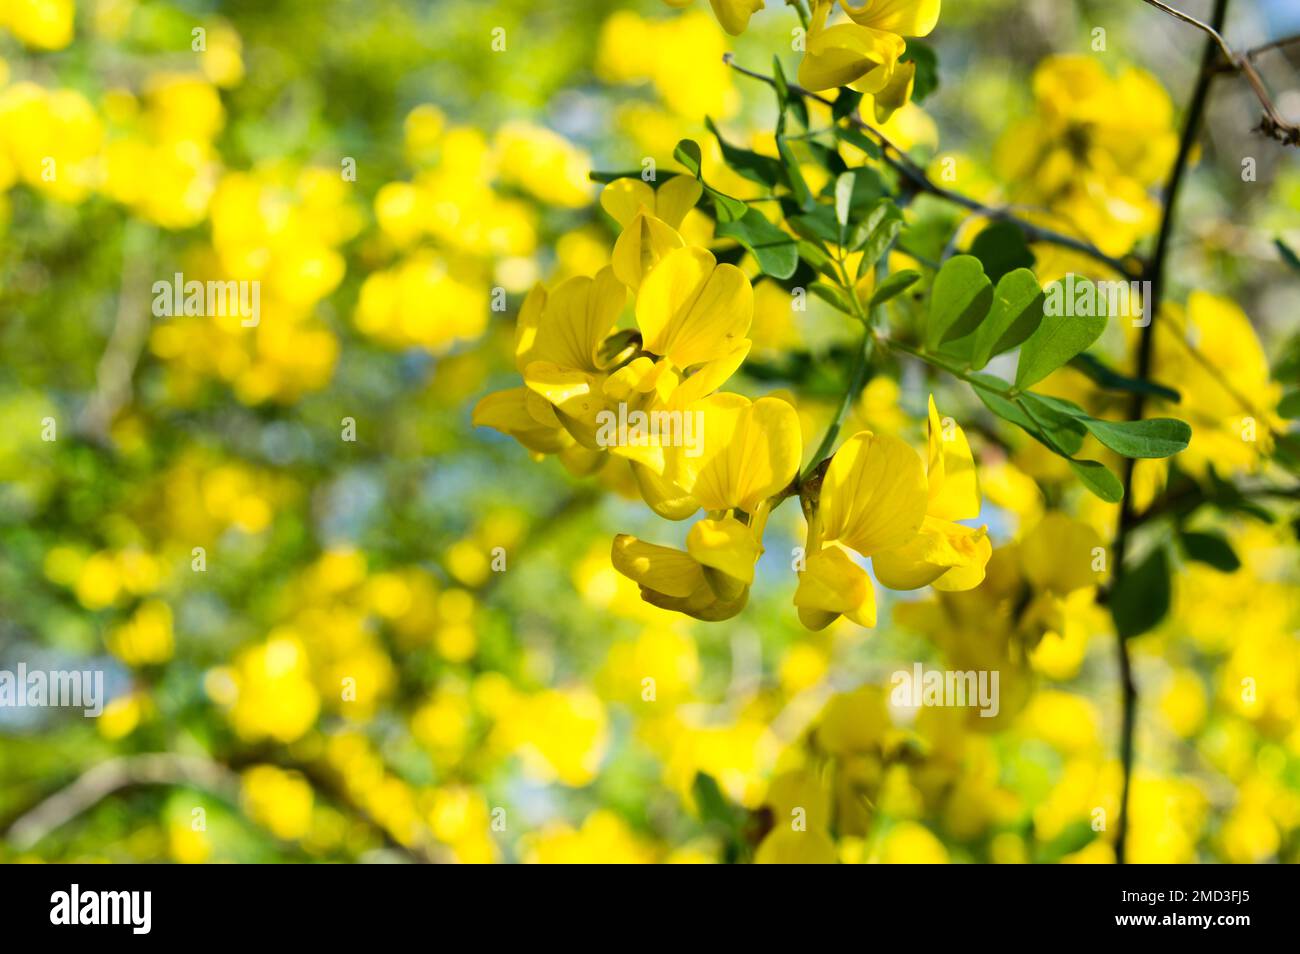 Magnifique arbuste jaune, Colutea arborescens ou vessie-senna, plante méditerranéenne, trouvée en Croatie, Istrie Banque D'Images